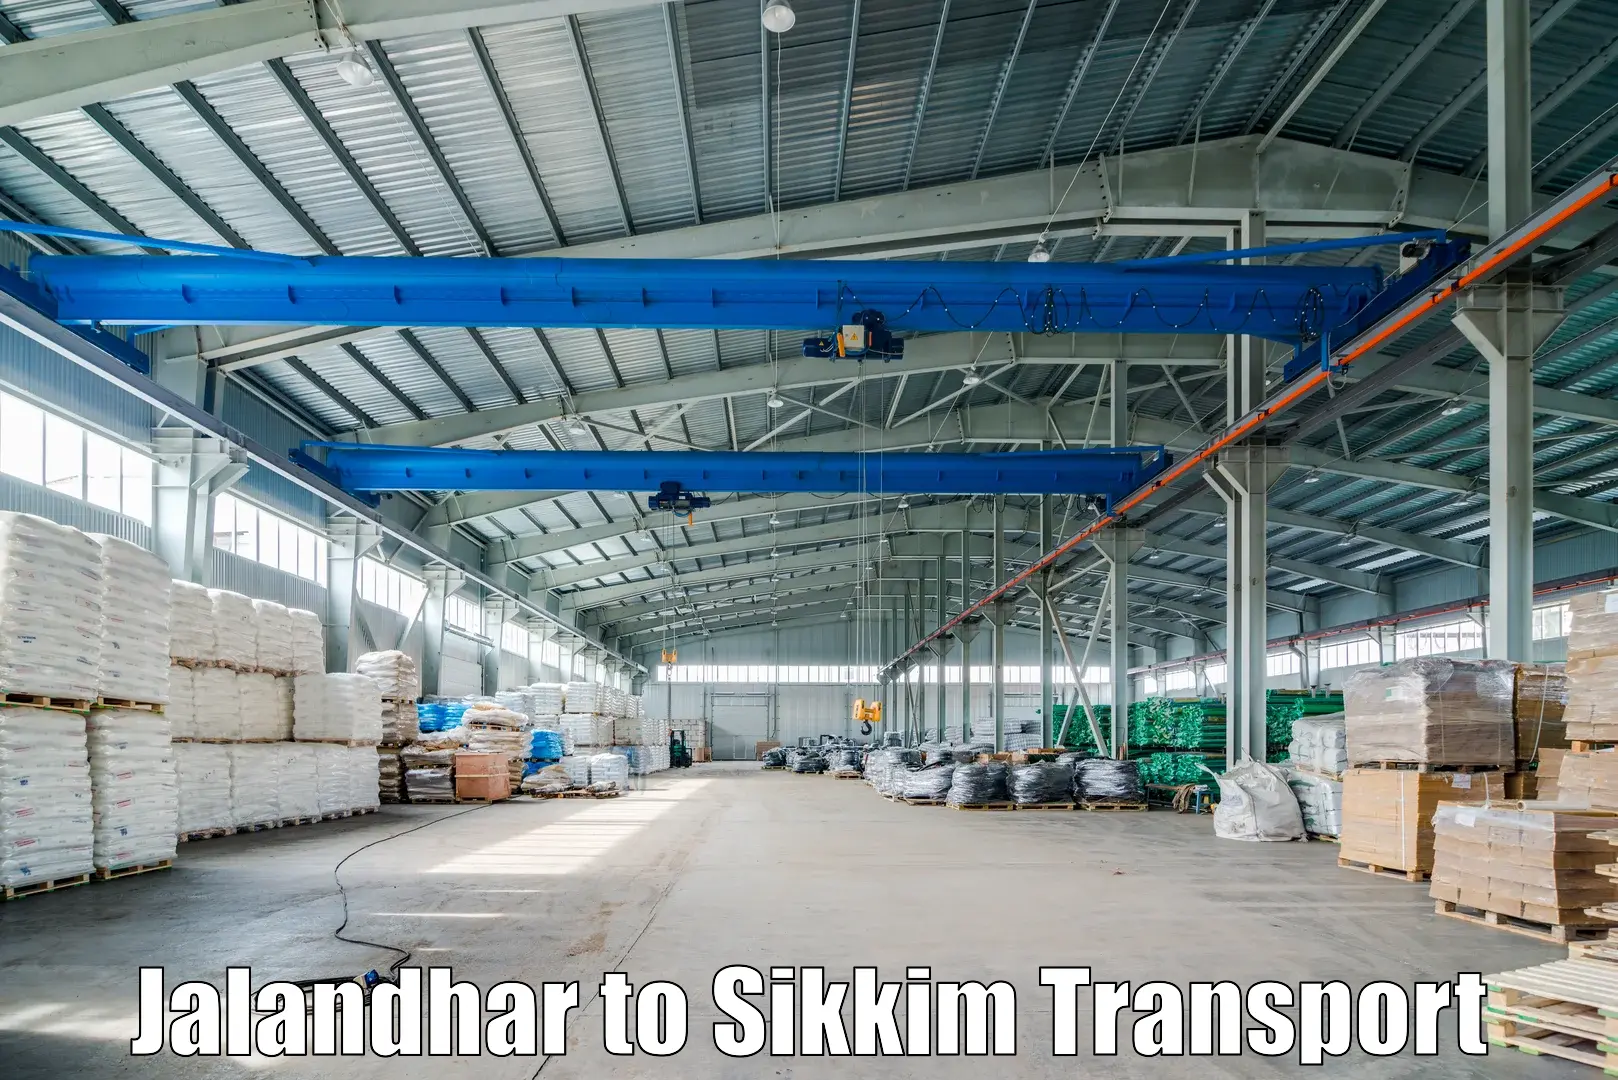 Commercial transport service Jalandhar to North Sikkim